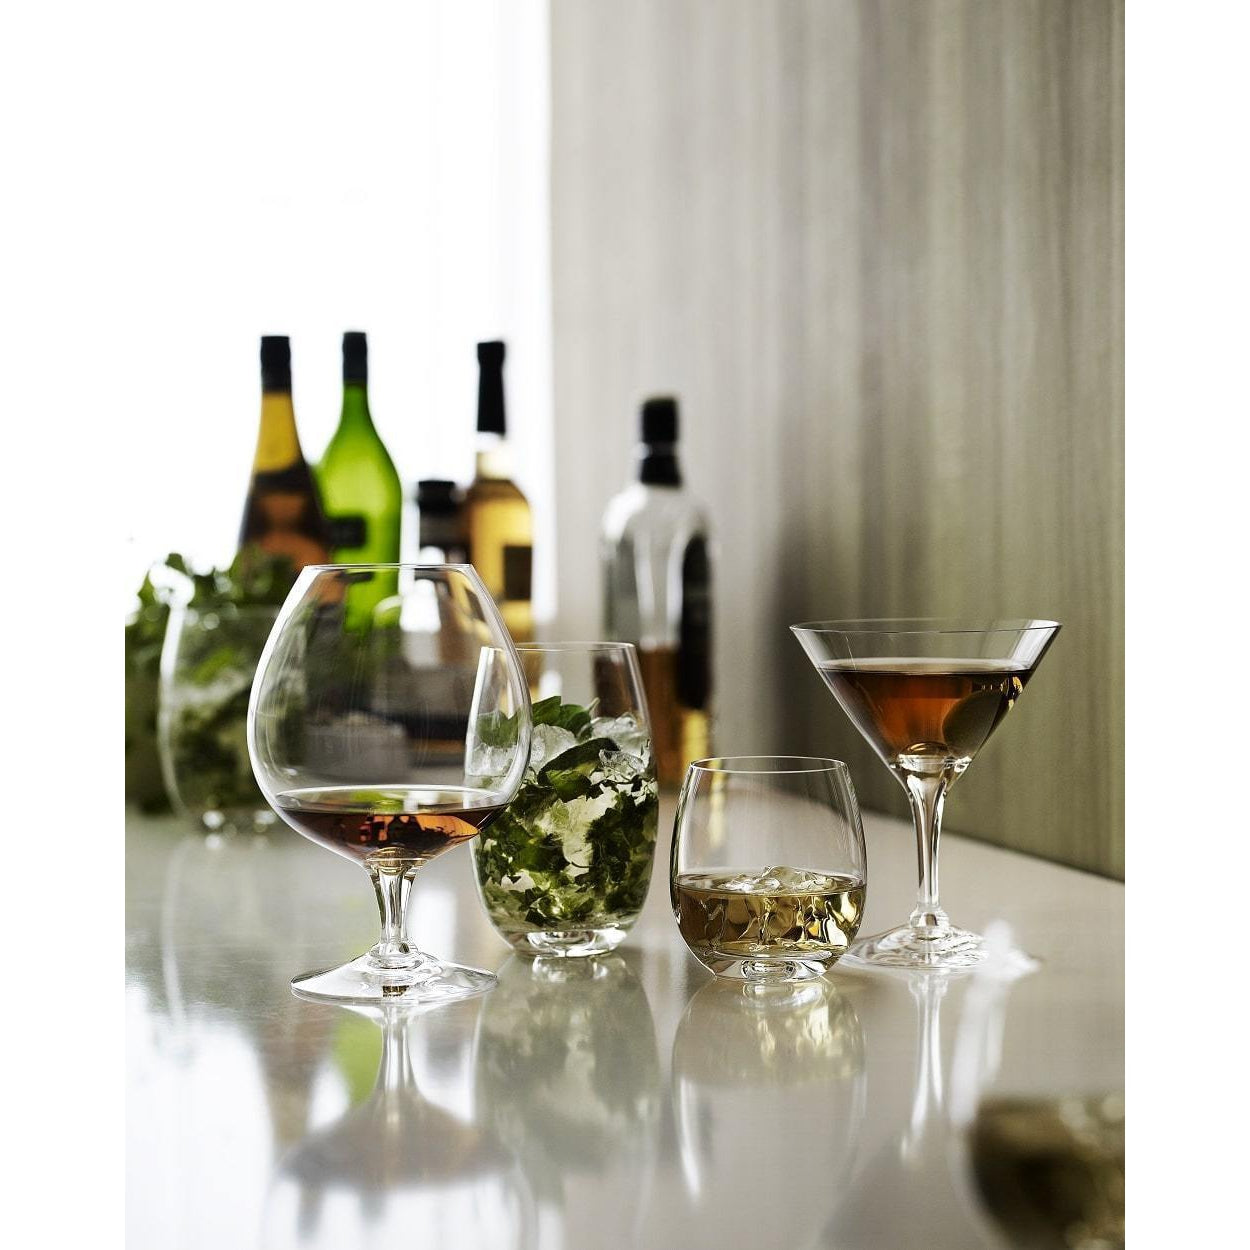 Holmegaard skibsglas, copo de vinho branco